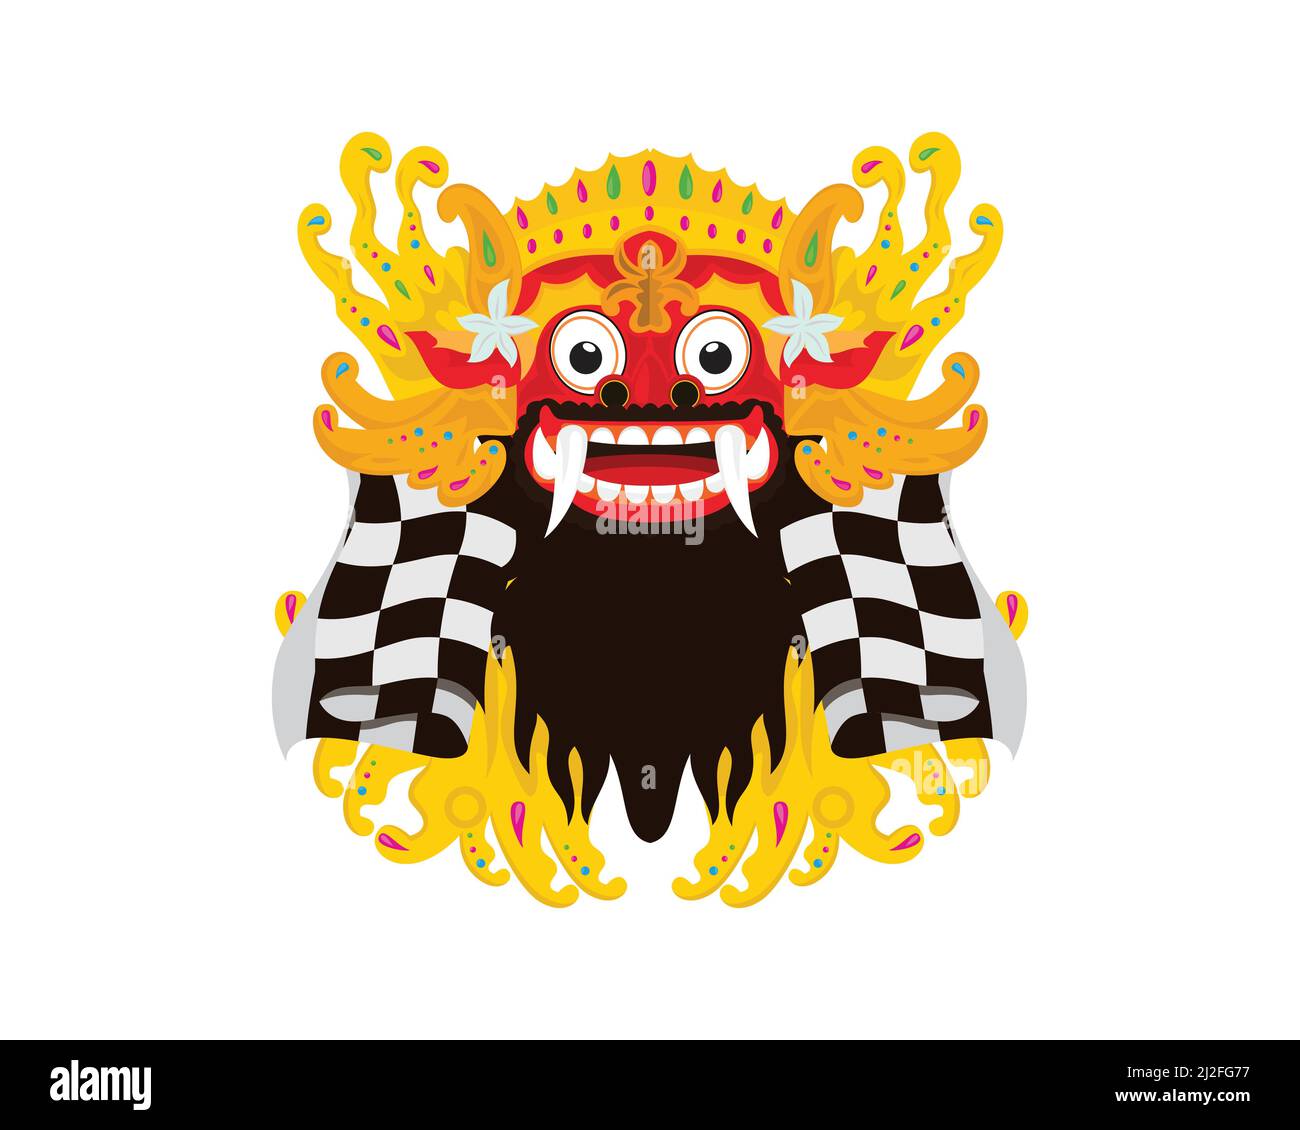 Detaillierte Illustration der indonesischen Kultur oder des traditionellen balinesischen Rituals mit dem Vektor der dekorativen Barong-Maske Stock Vektor